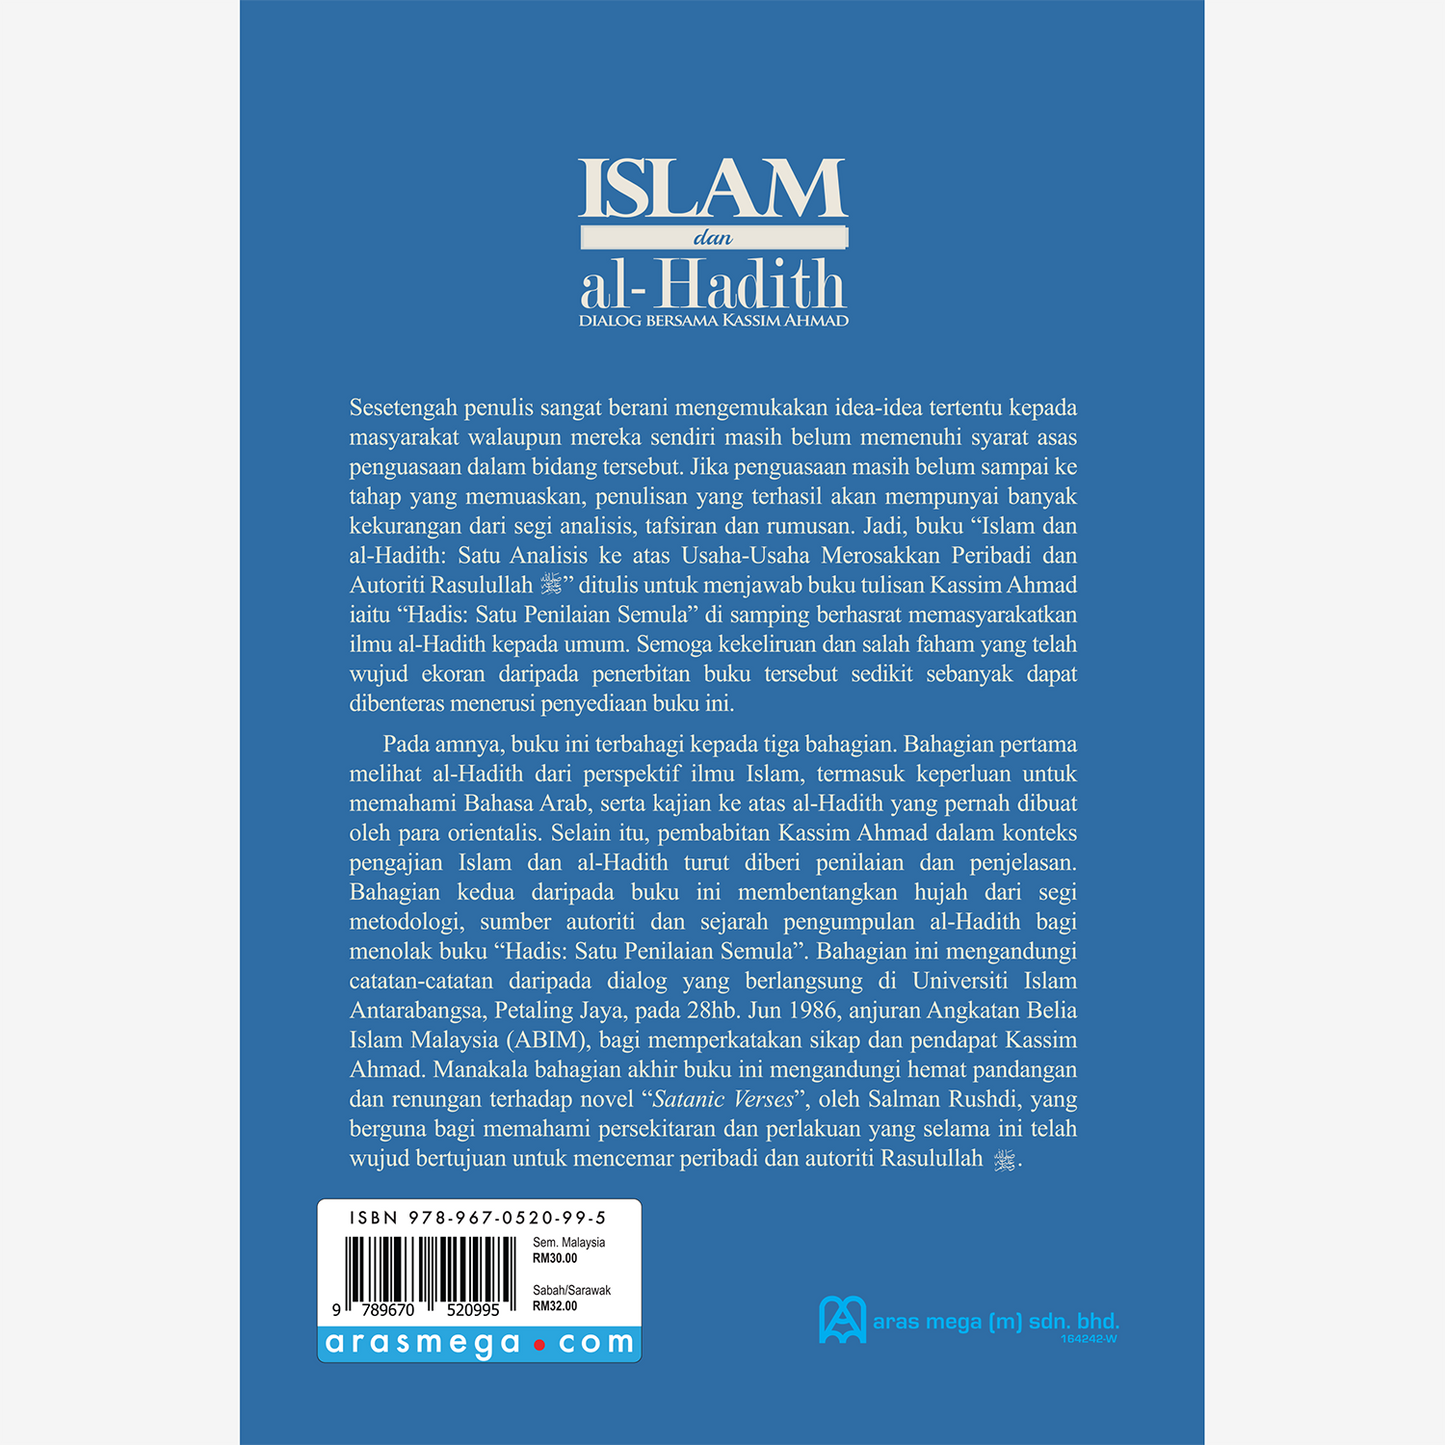 Islam dan al-Hadith: Dialog bersama Kassim Ahmad